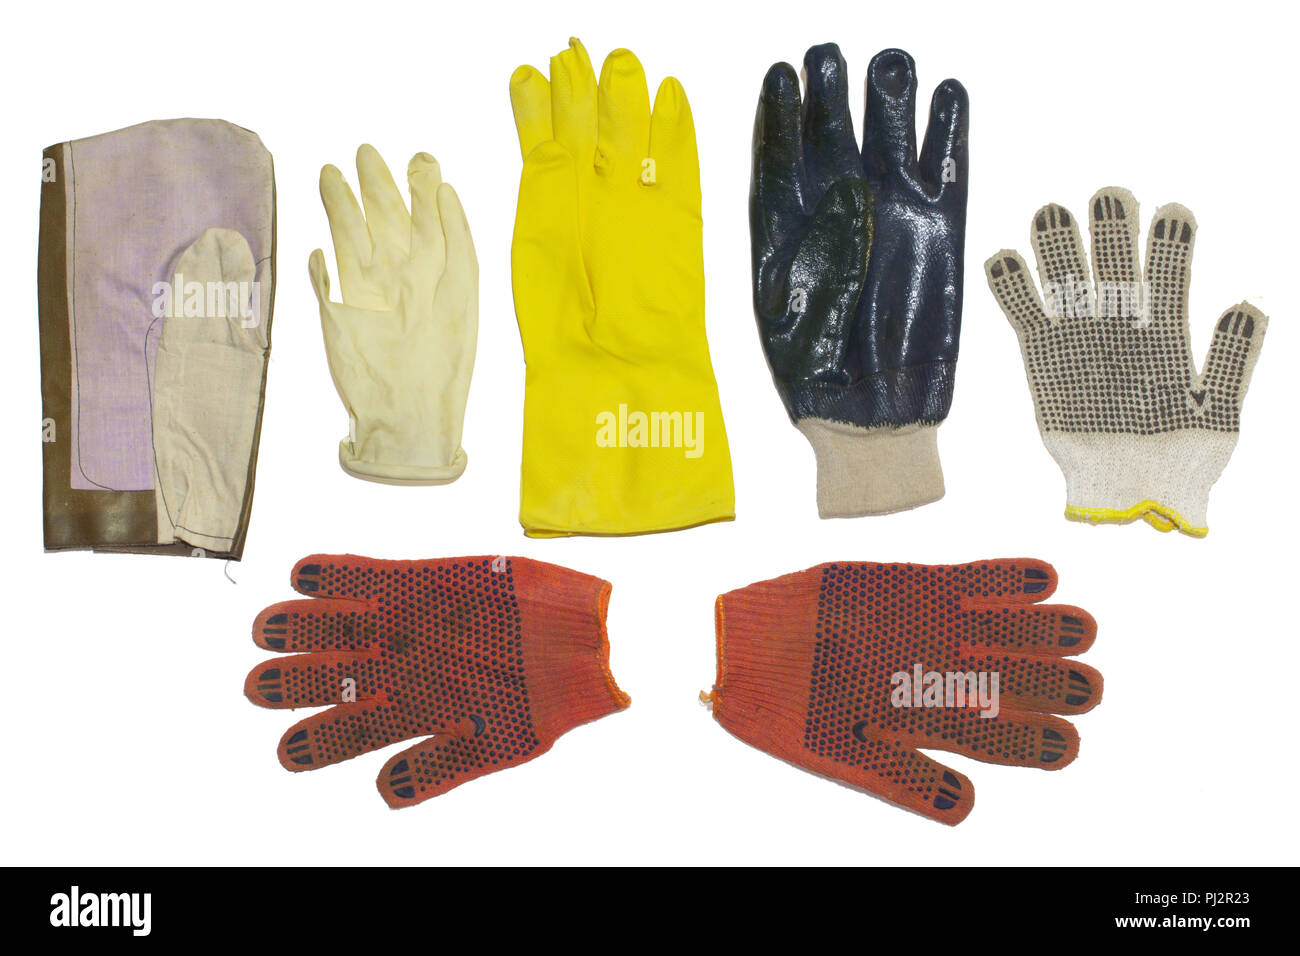 Des gants de caoutchouc et matières du tissu.. pour le ménage, le jardinage et le nettoyage, dangereux, médicaux et travaux manuels isolés, clipping path Banque D'Images